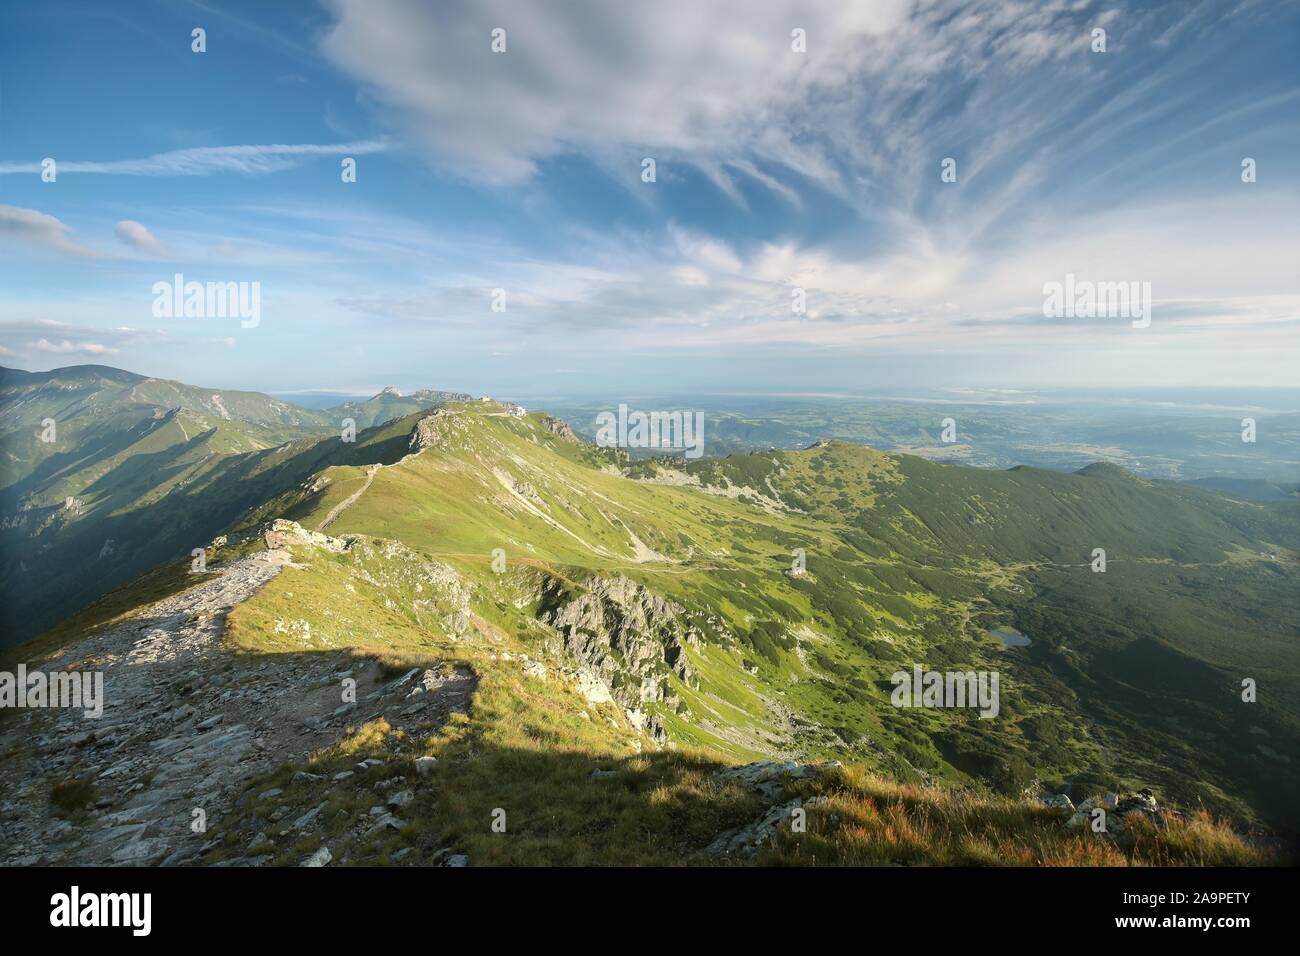 Picchi nei Monti Tatra. I Monti Tatra sono le vette più alte dei Carpazi sulla frontiera polacco-slovacca. Foto Stock